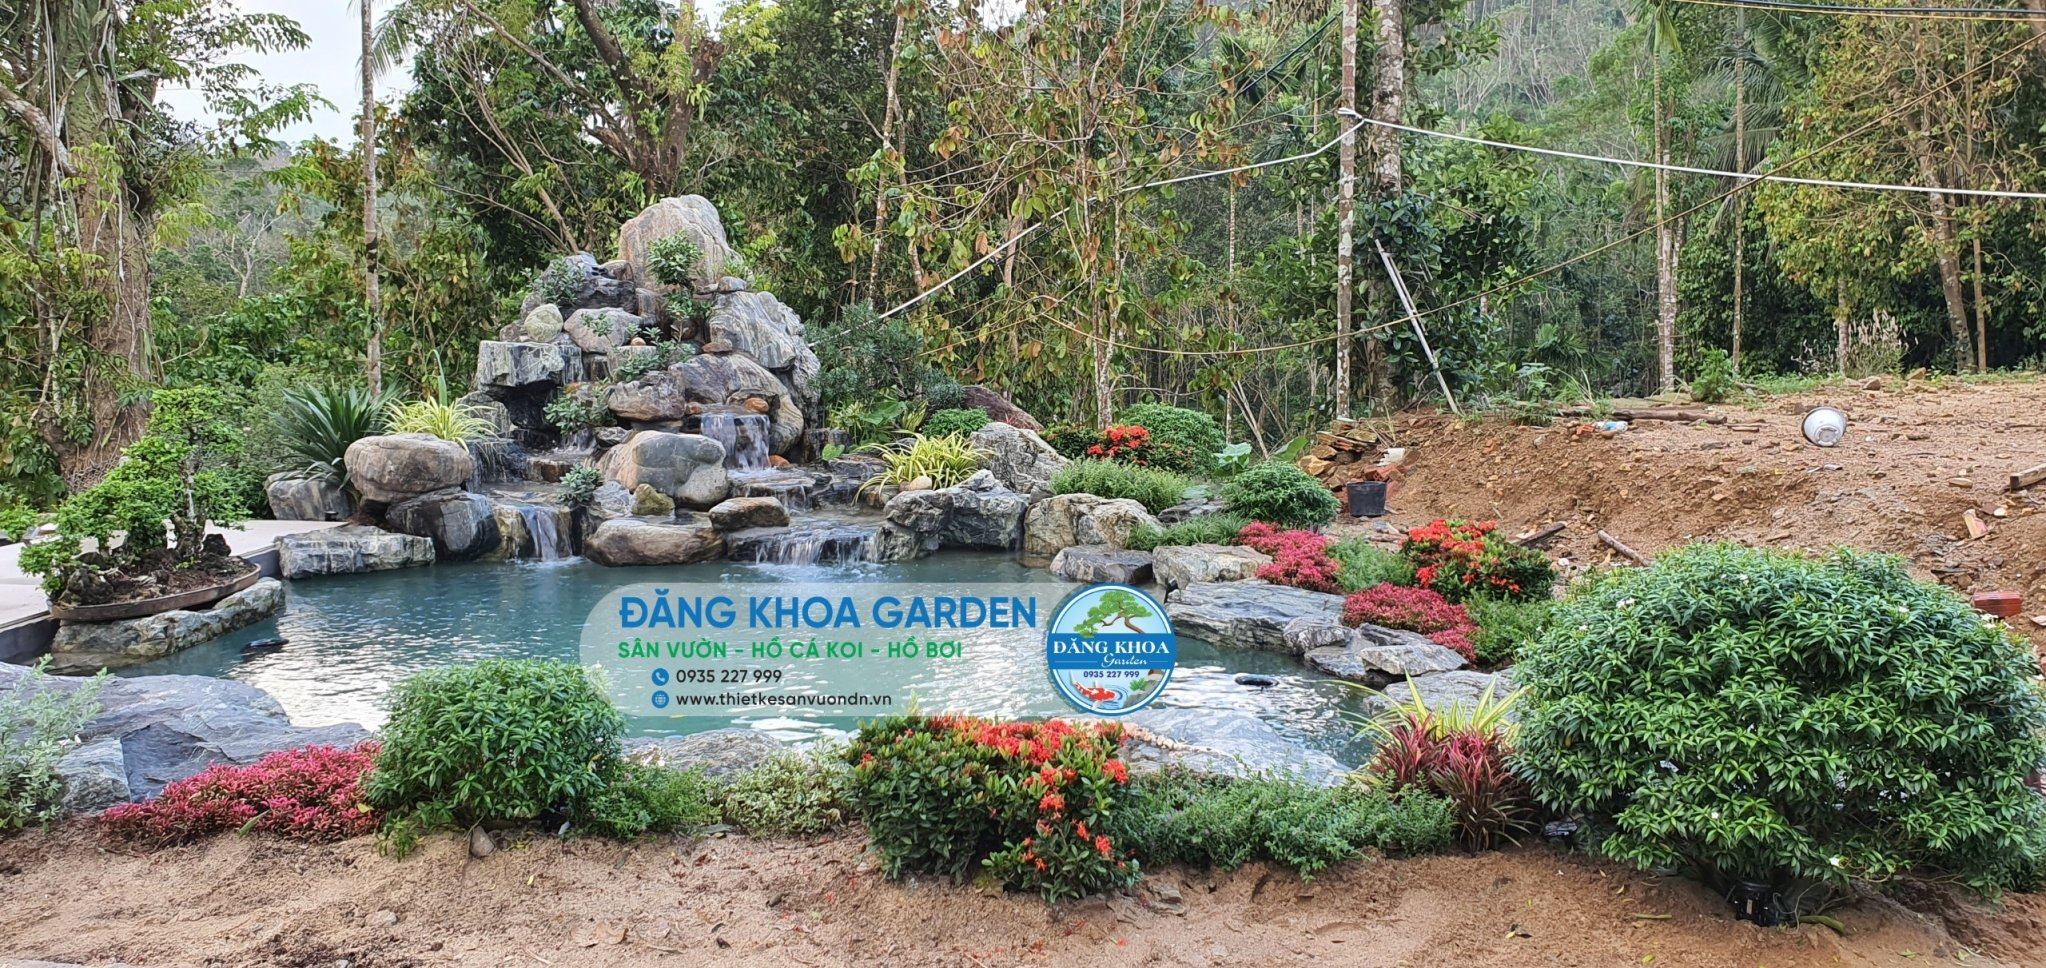 Thiết kế thi công sân vườn Đà Nẵng uy tín| Đăng Khoa Garden 3